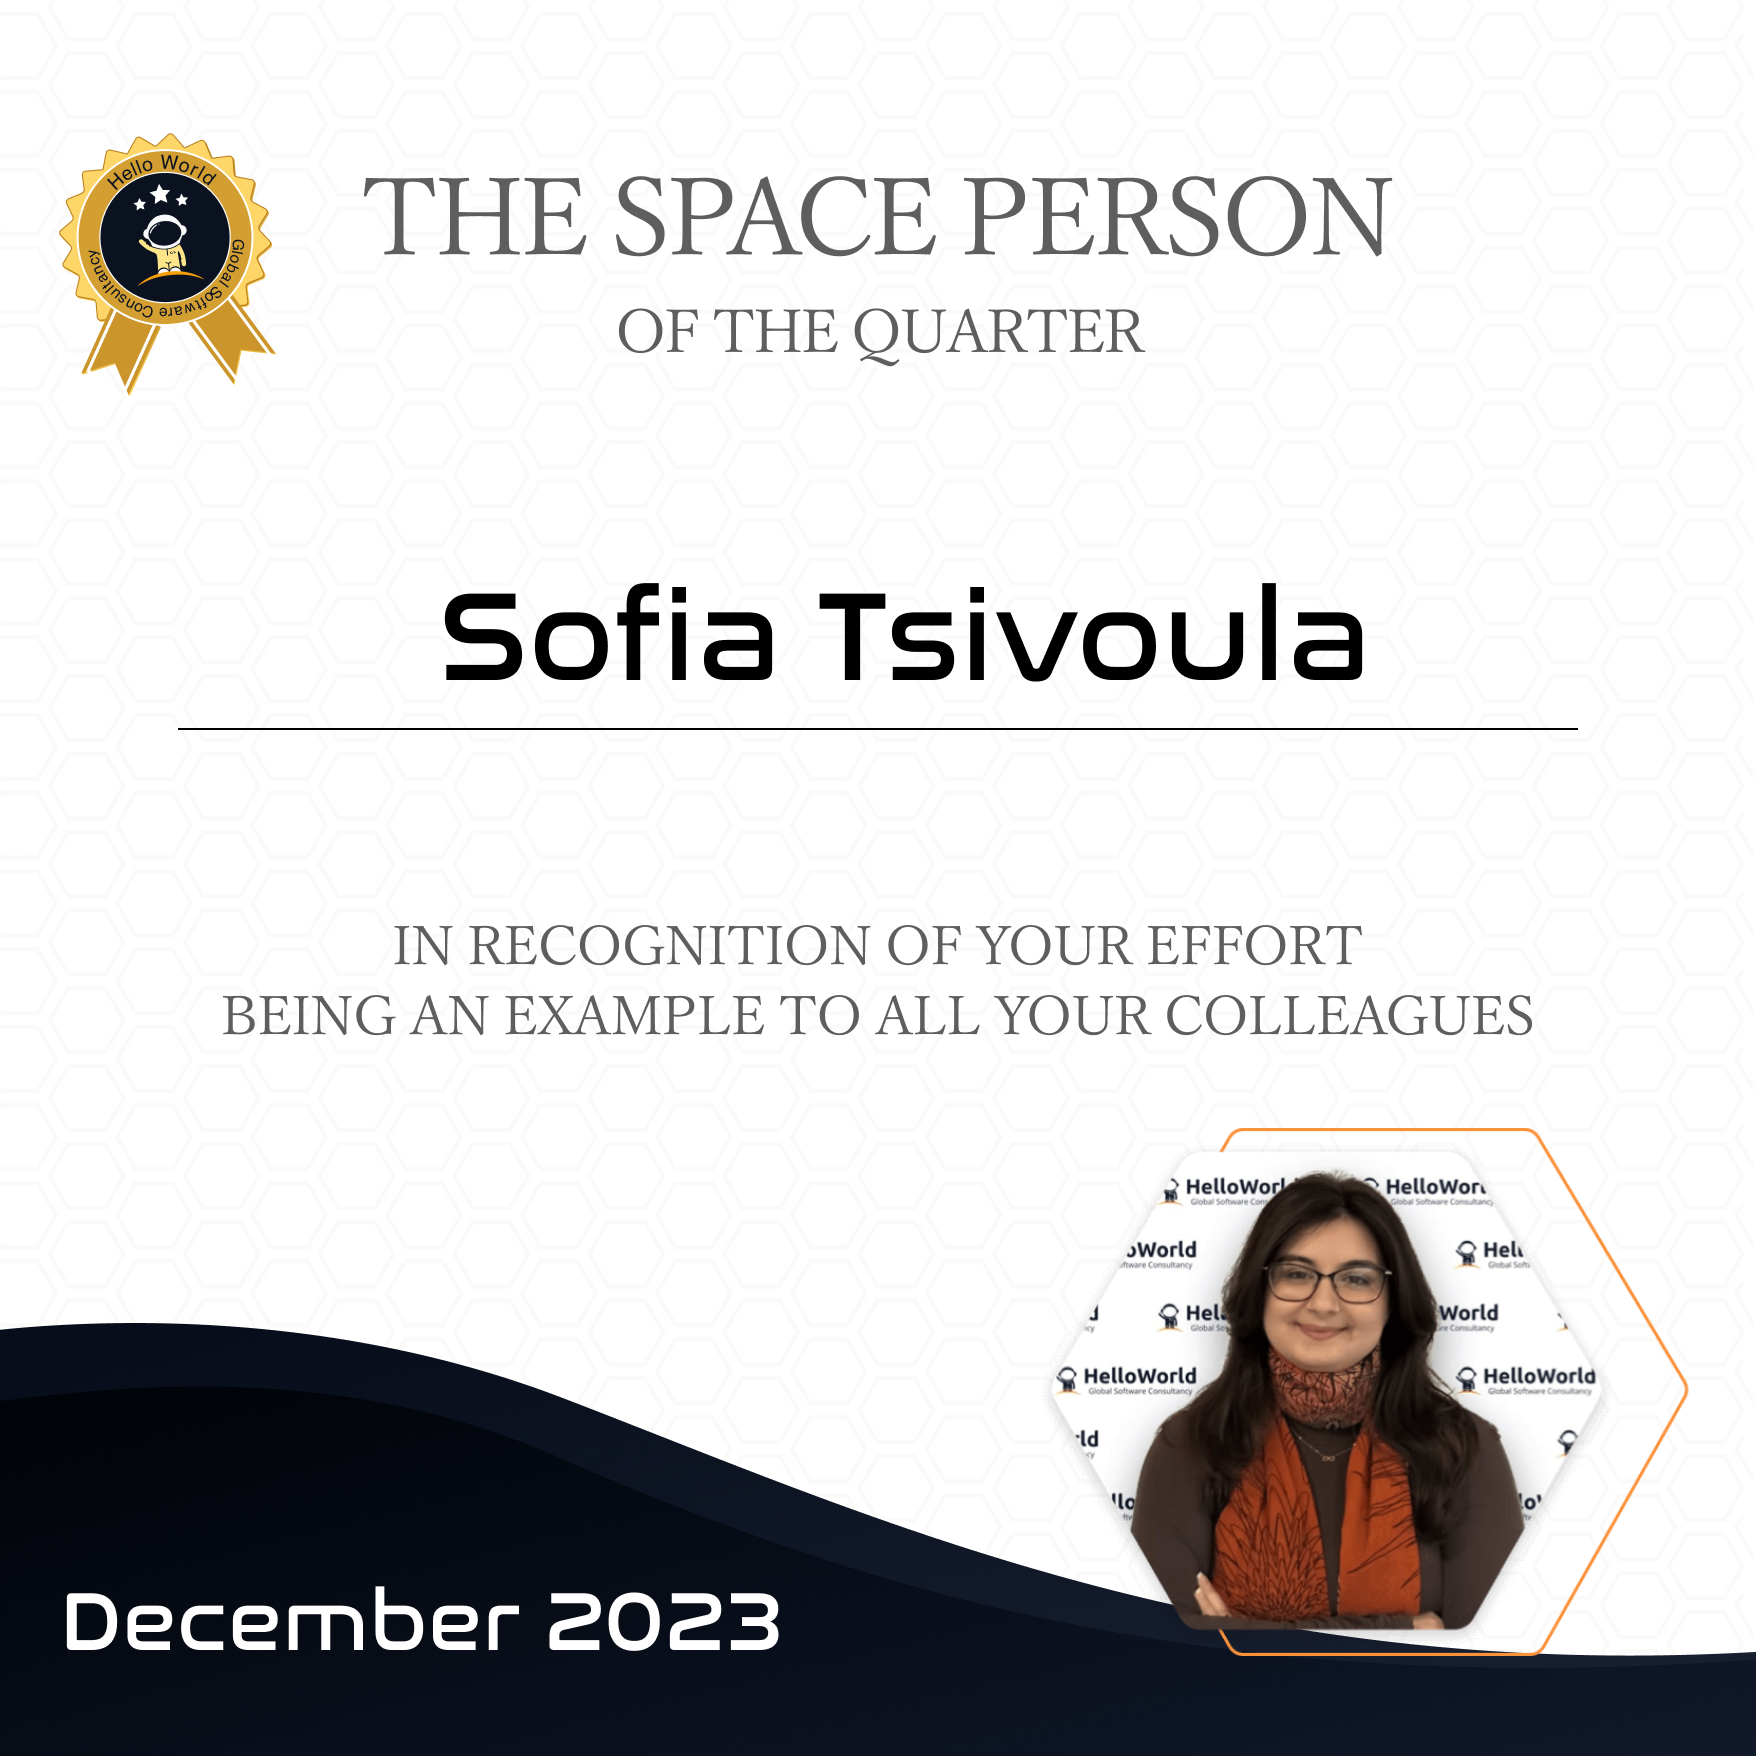 Space Person, 4th quarter 2023